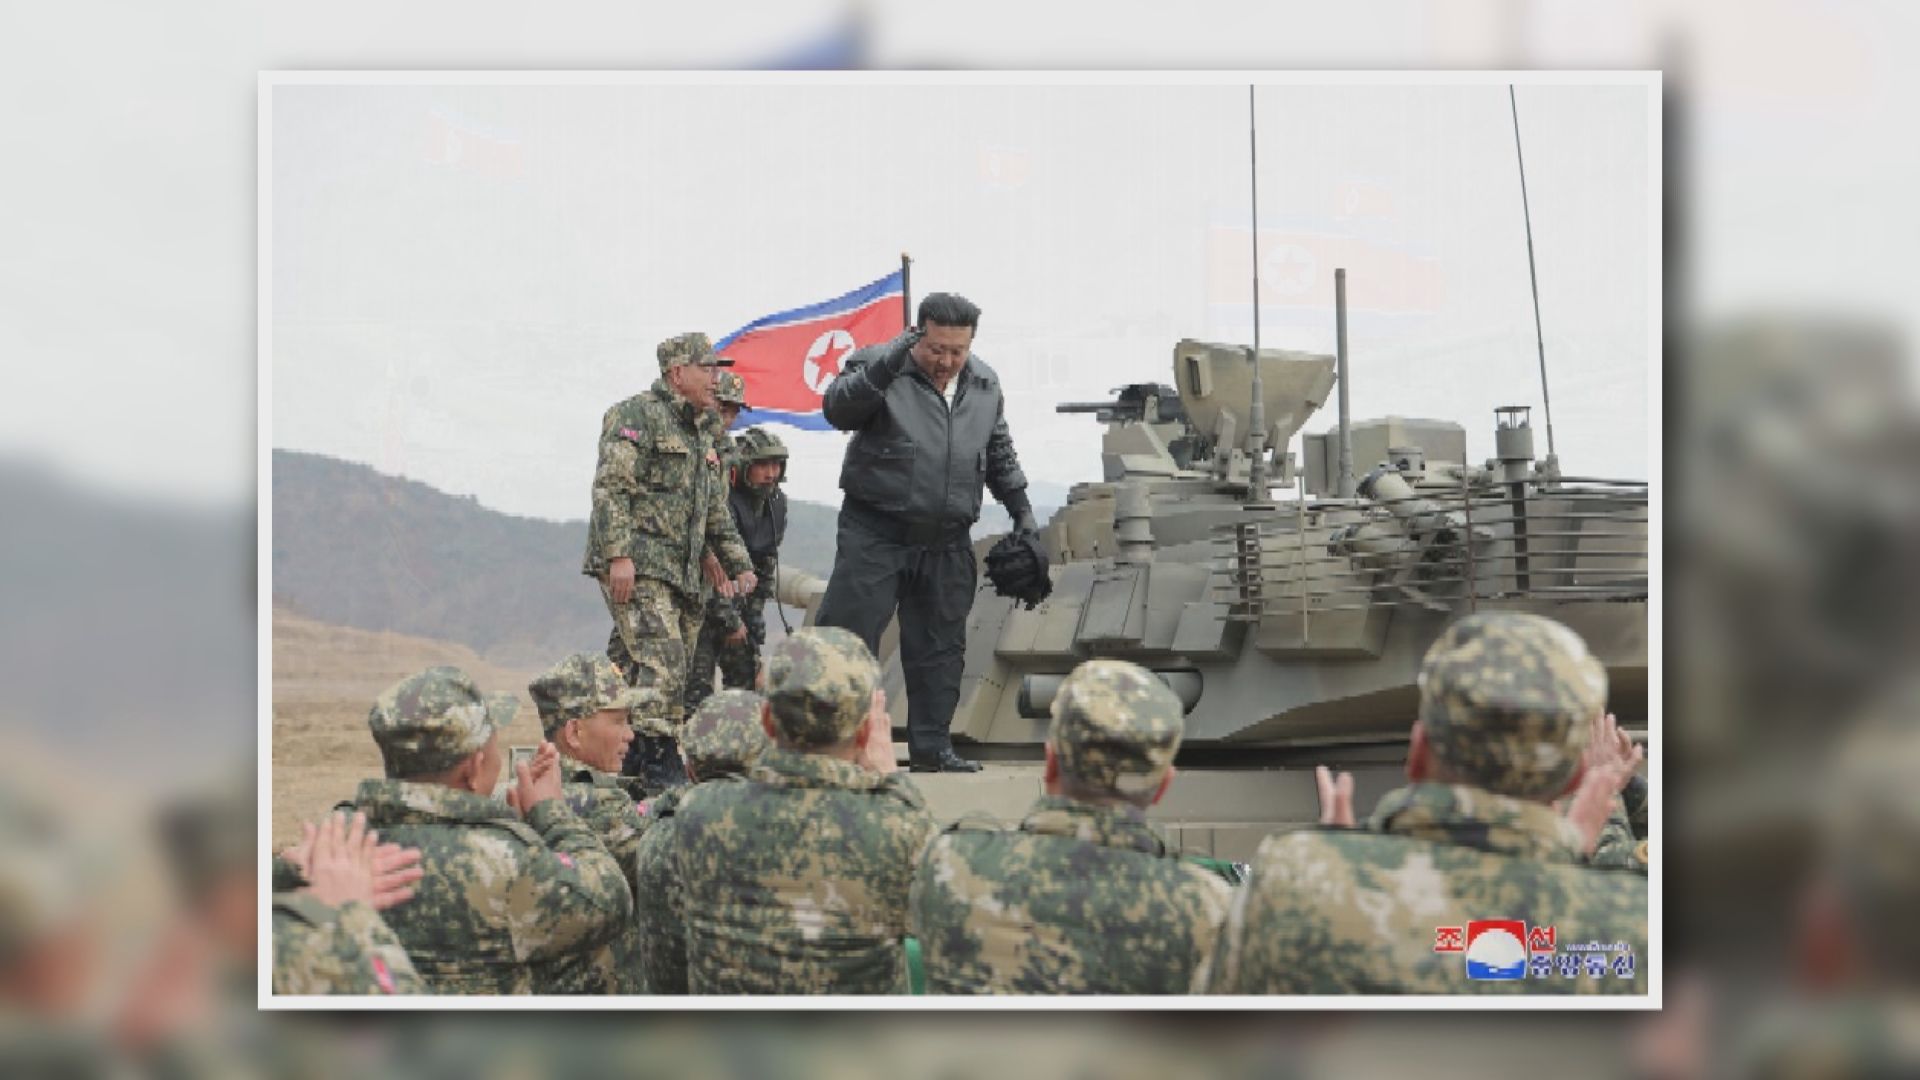 金正恩親自駕駛新型主戰坦克 南韓及美國進行實彈射擊演習